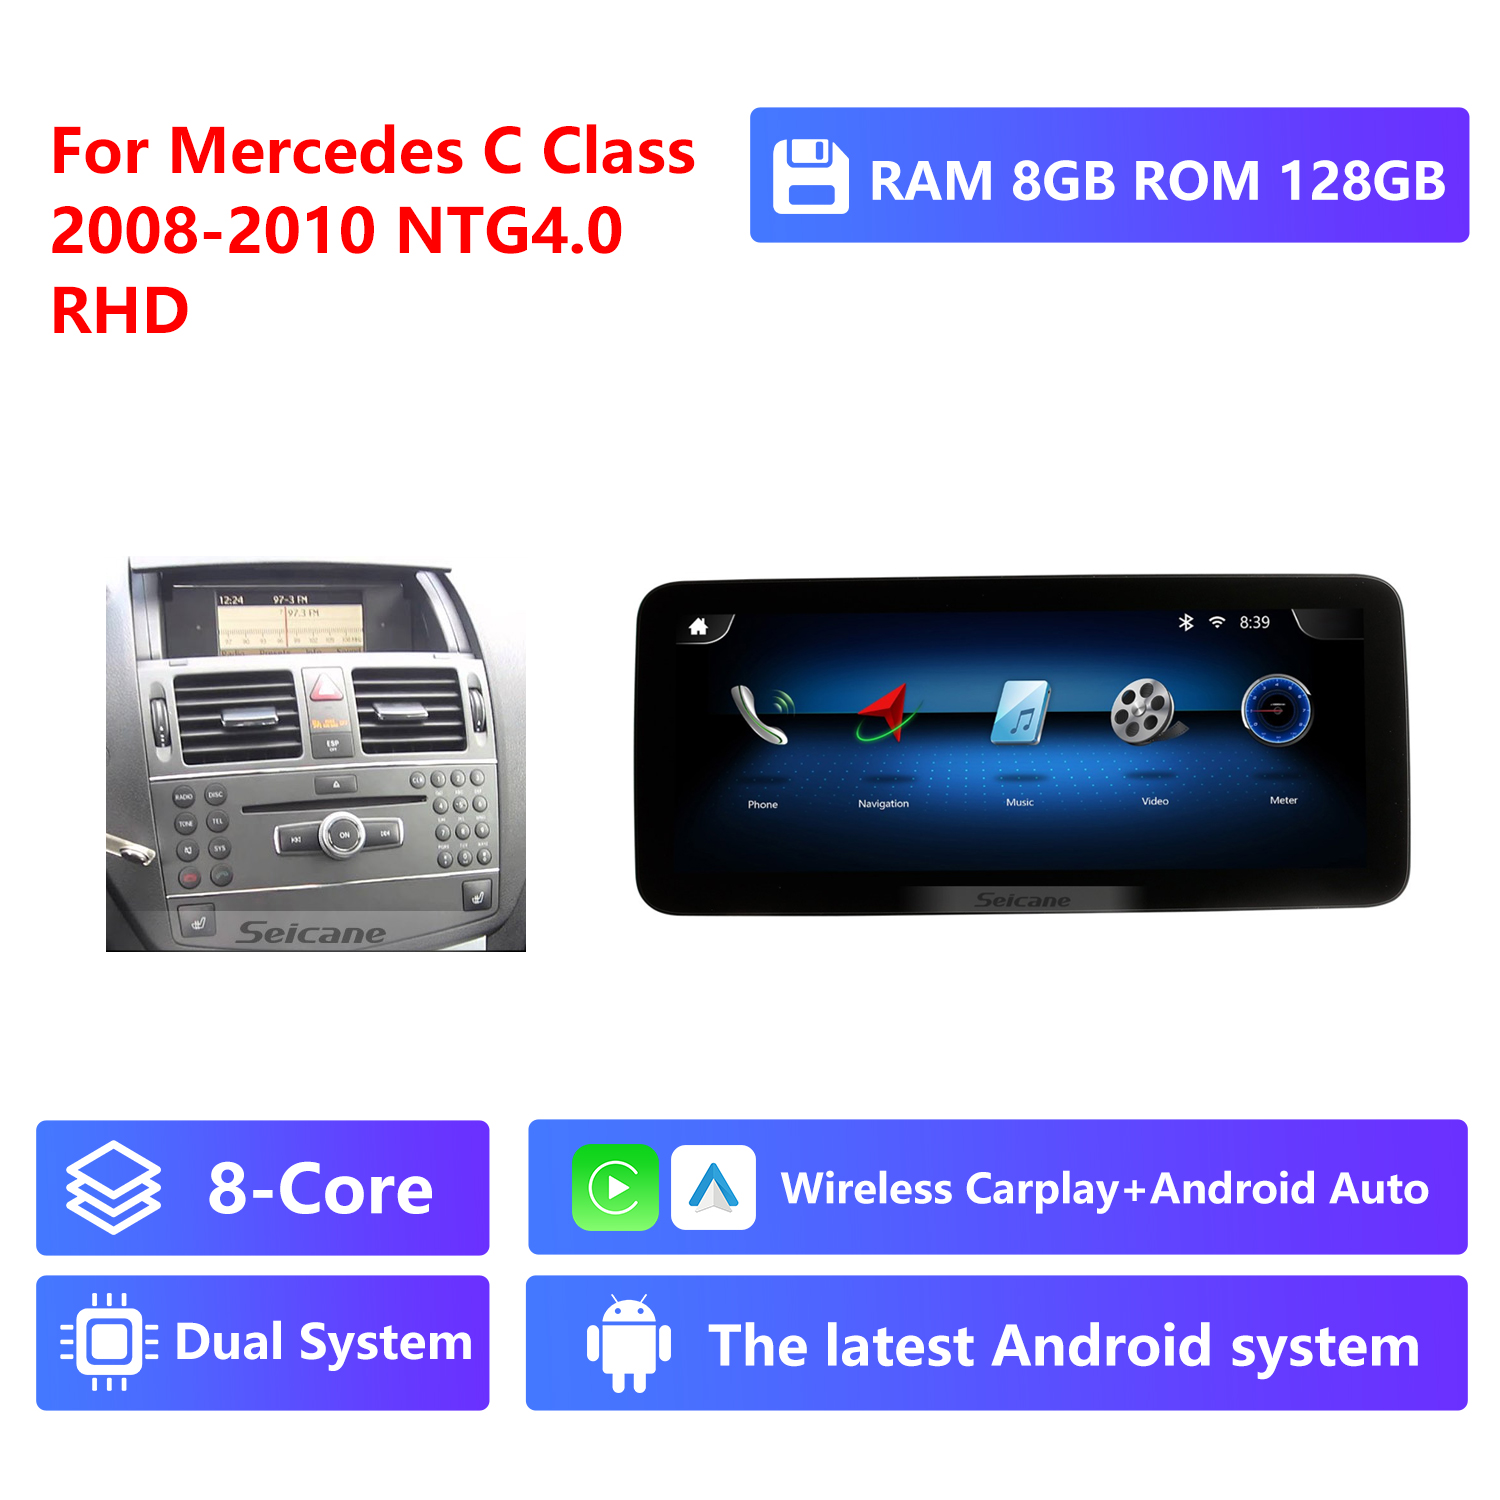 8-Core RAM 8G ROM 128G,RHD,NTG4.0